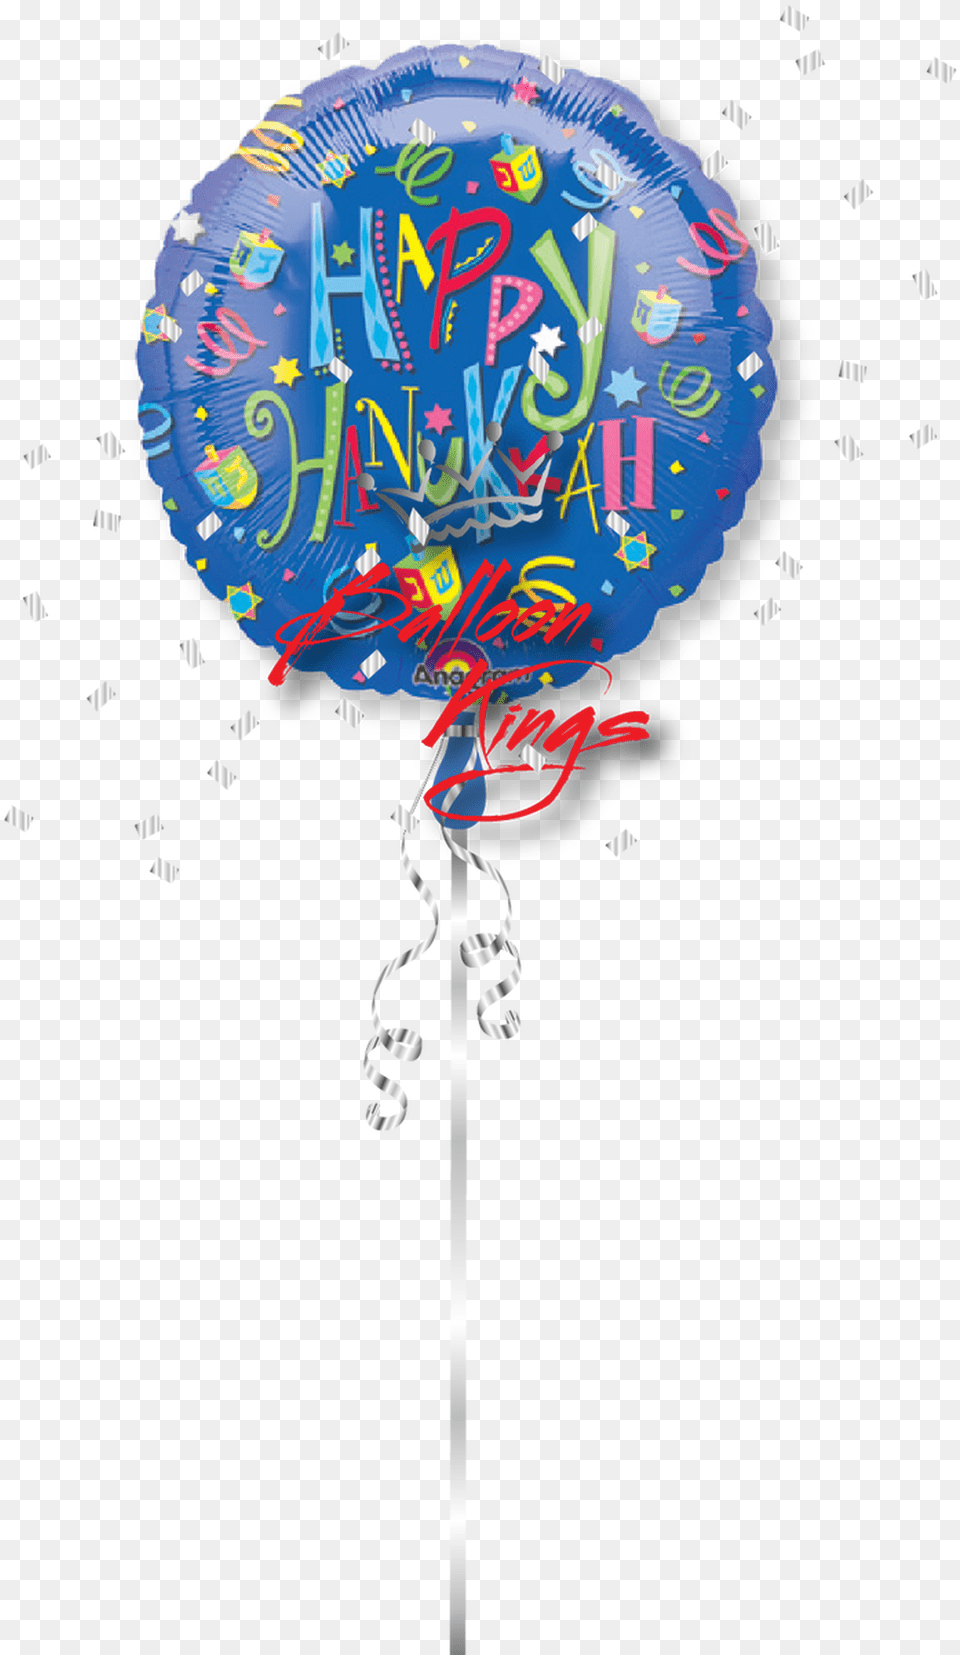 Happy Hanukkah Fun Circle, Balloon, Food, Sweets Free Png